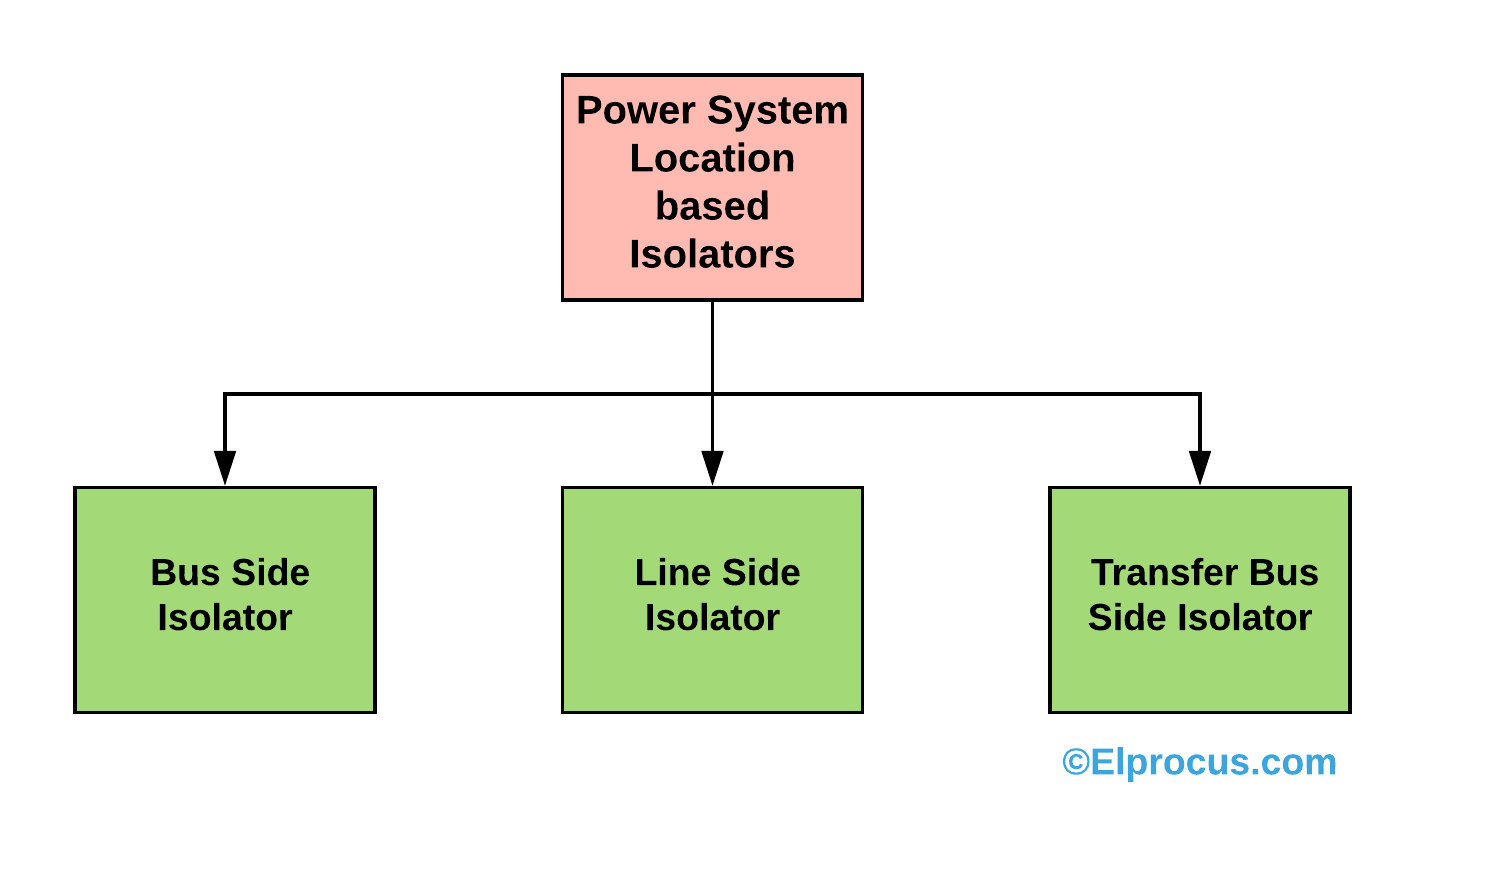 Aisladores basados en la ubicación del sistema eléctrico